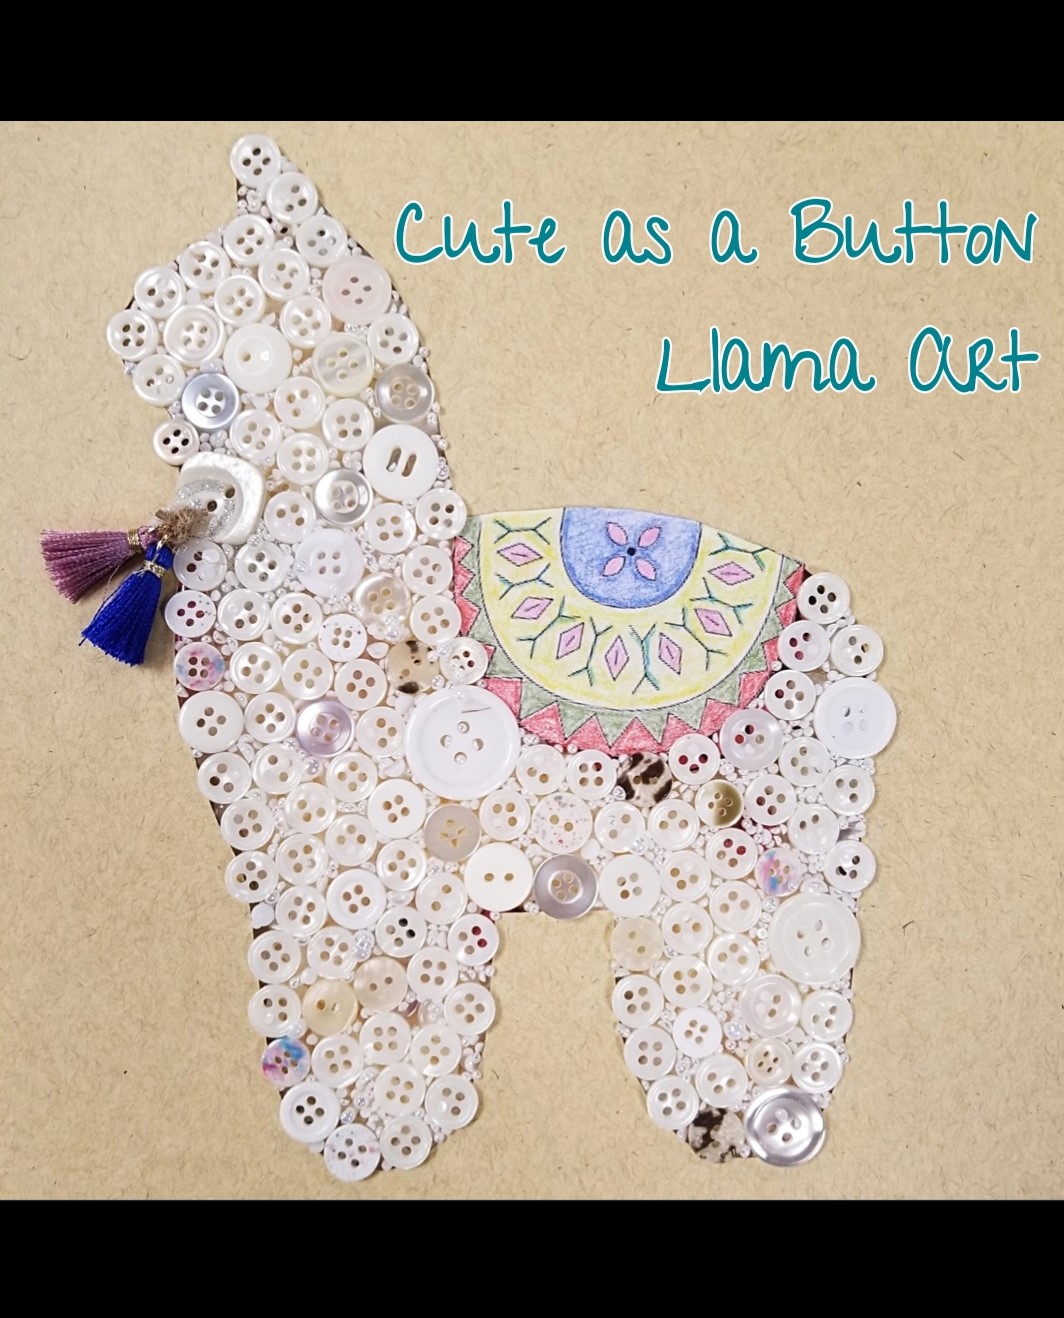 Cute as a Button Llama Art